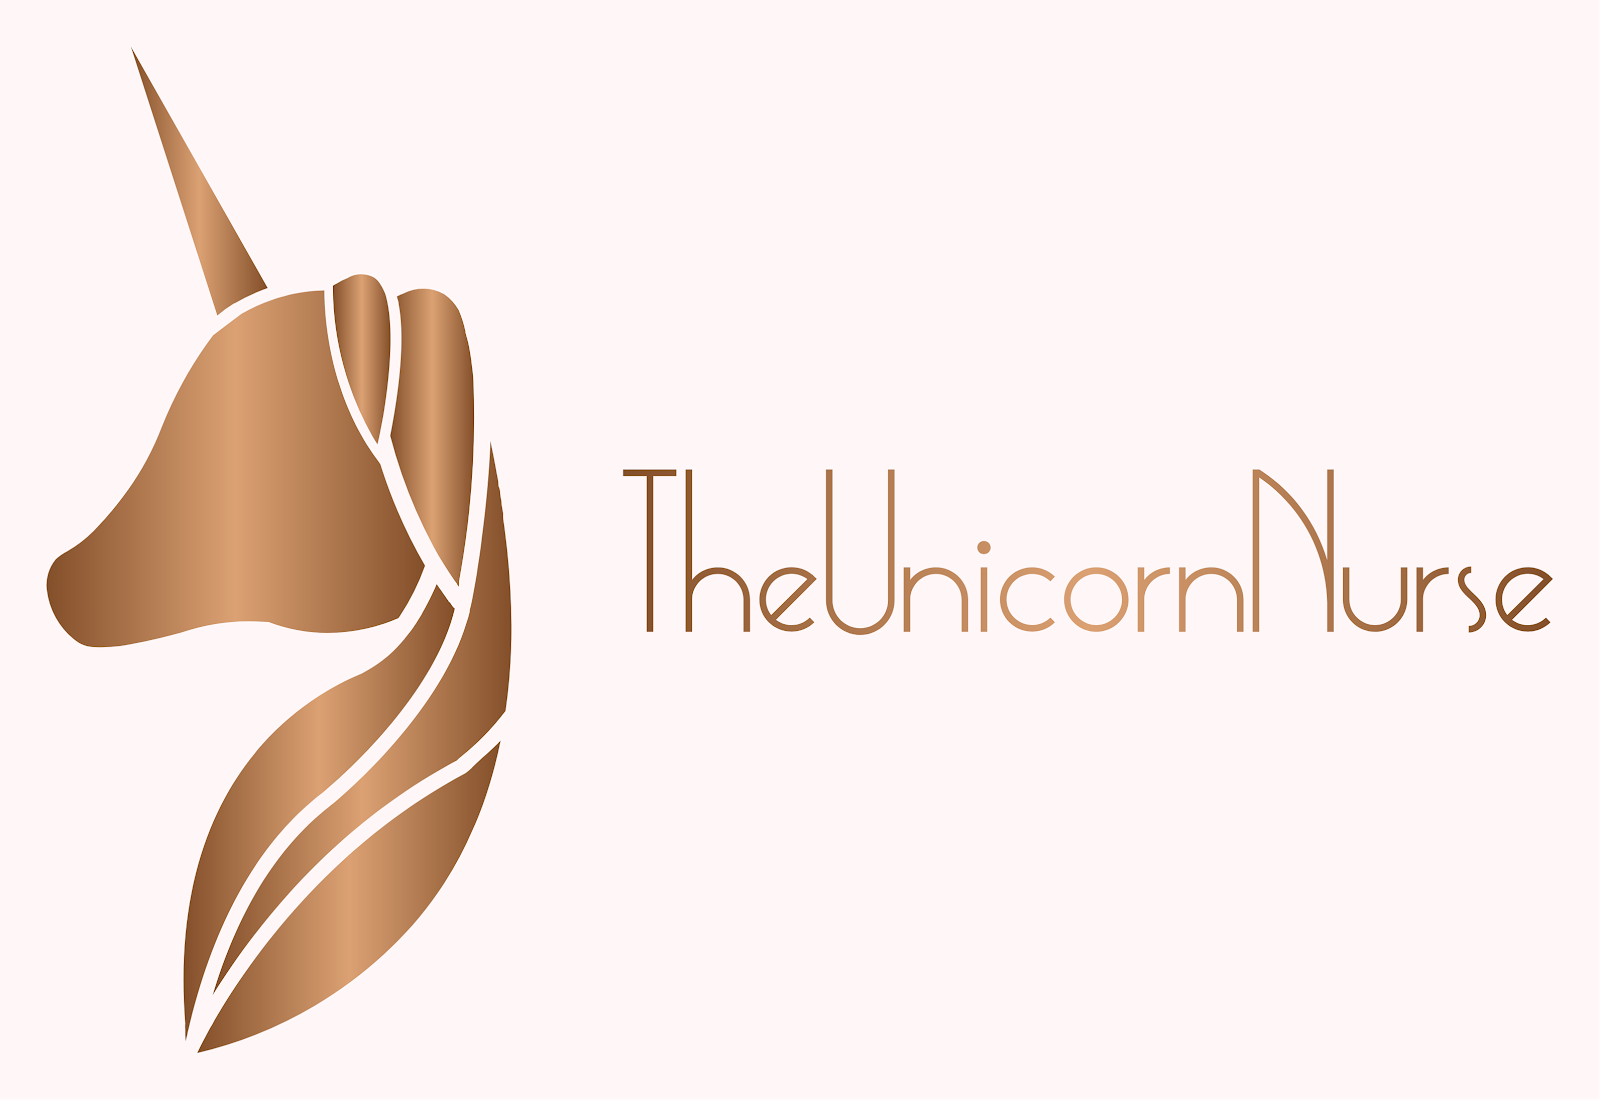 The Unicorn Nurse